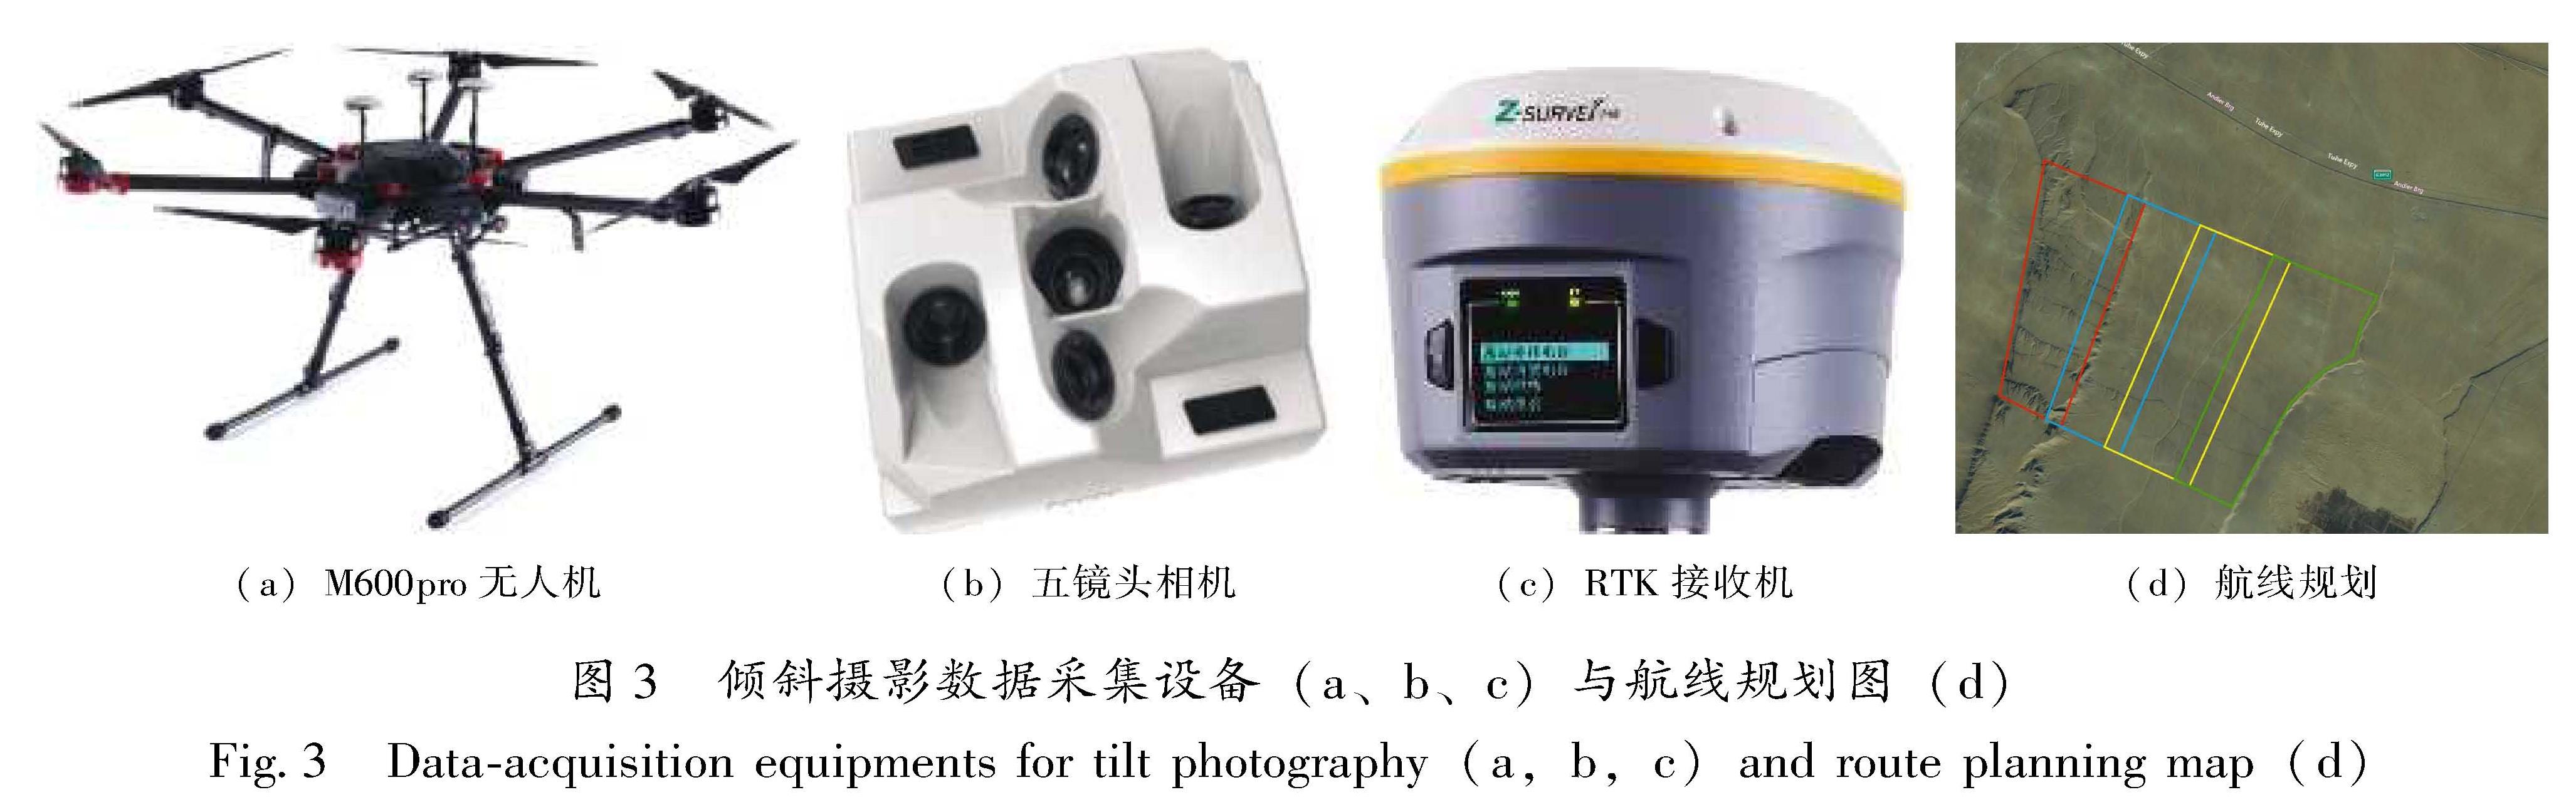 图3 倾斜摄影数据采集设备(a、b、c)与航线规划图(d)<br/>Fig.3 Data-acquisition equipments for tilt photography(a,b,c)and route planning map(d)